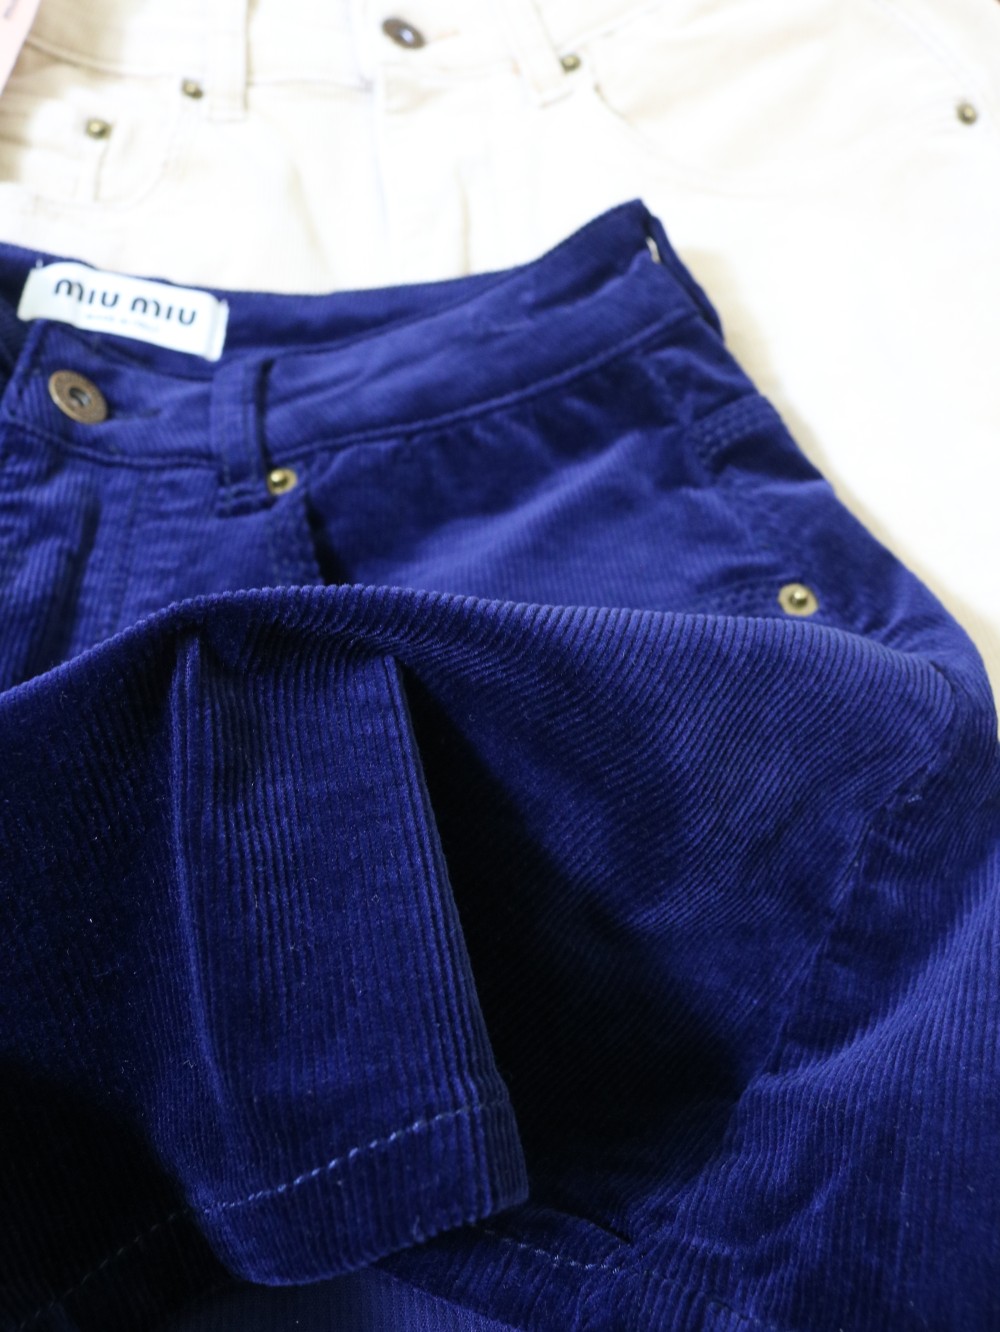 流光溢彩～ \n 对！这个光泽感是灯芯绒！ miumiu第一款灯芯绒面料的短裤  定位活性刺绣，重工洗水工艺进口面料